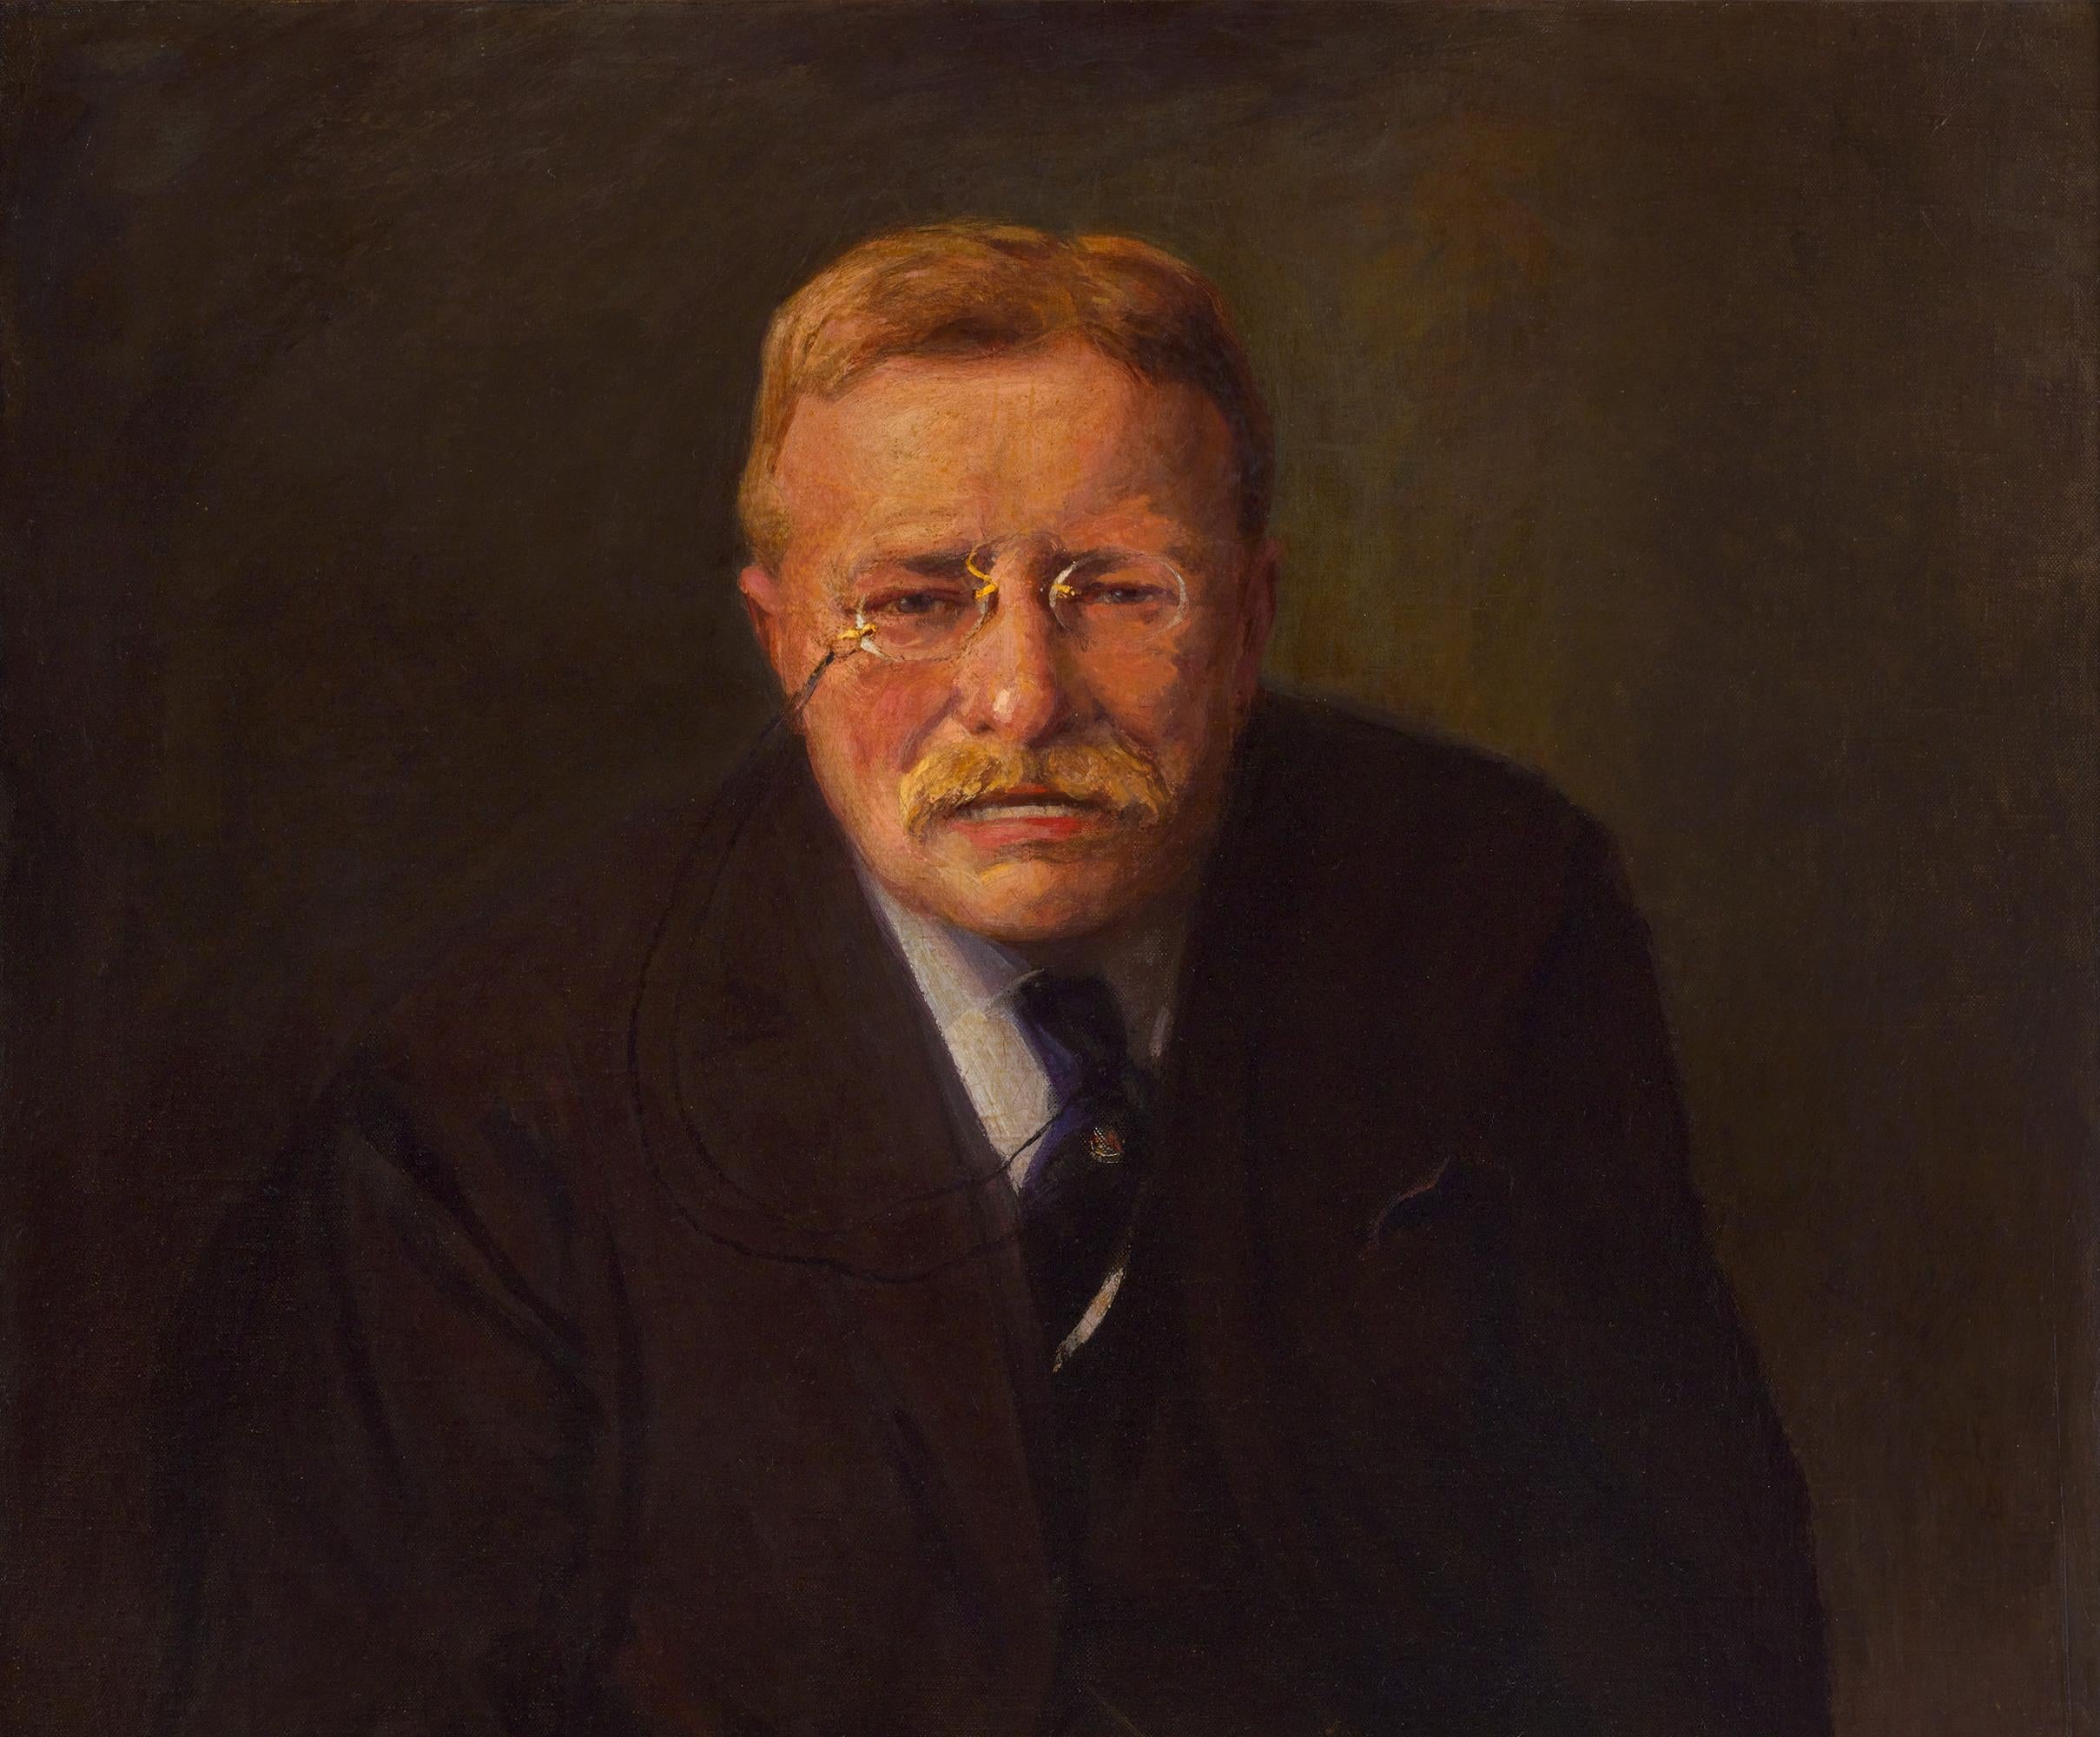 Portrait de Theodore Roosevelt par Joseph A. Imhof - Académique Painting par Joseph Adam Imhof